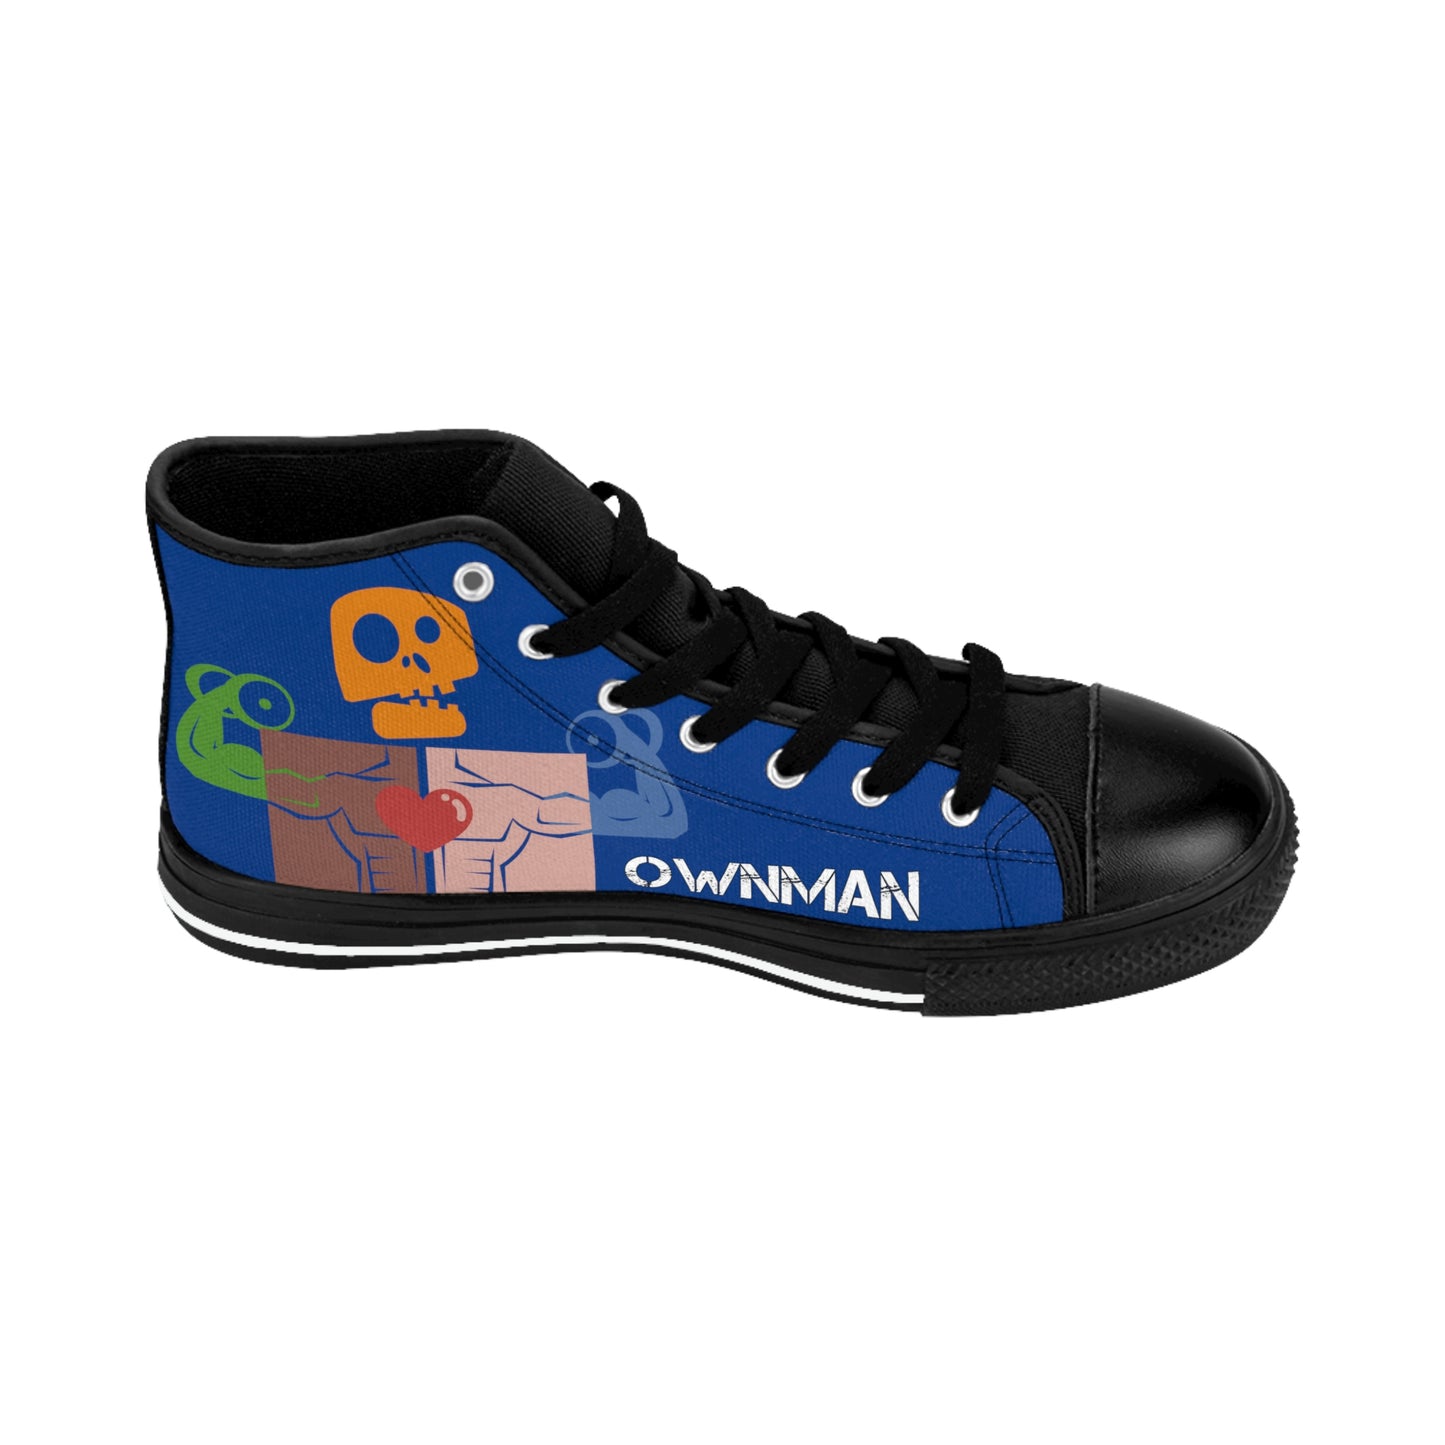 OWN MAN - Men's Classic Sneakers